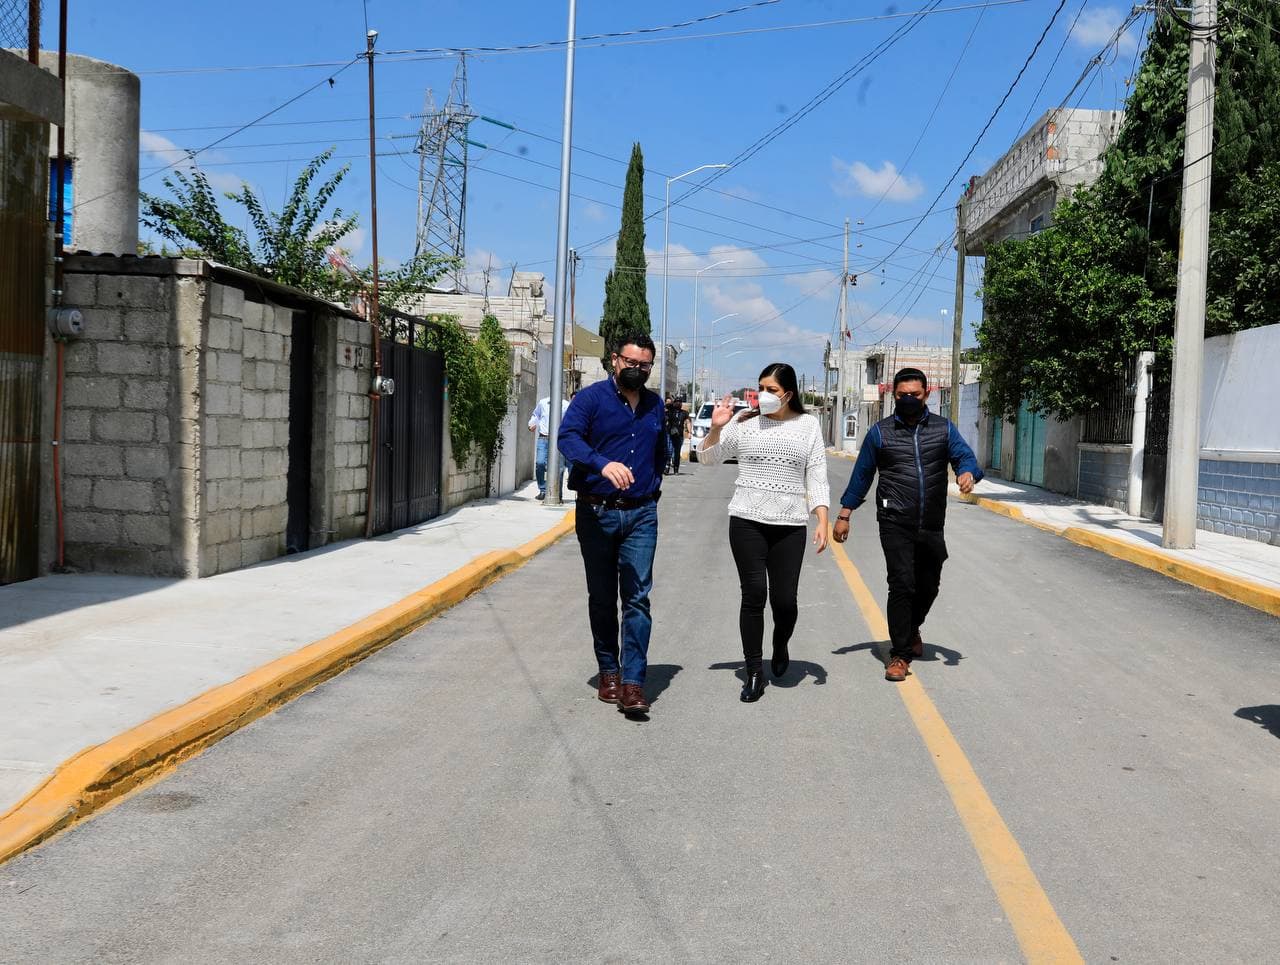 Con inversión en infraestructura por 12 millones de pesos, detona Ayuntamiento de Puebla bienestar social en La Resurrección